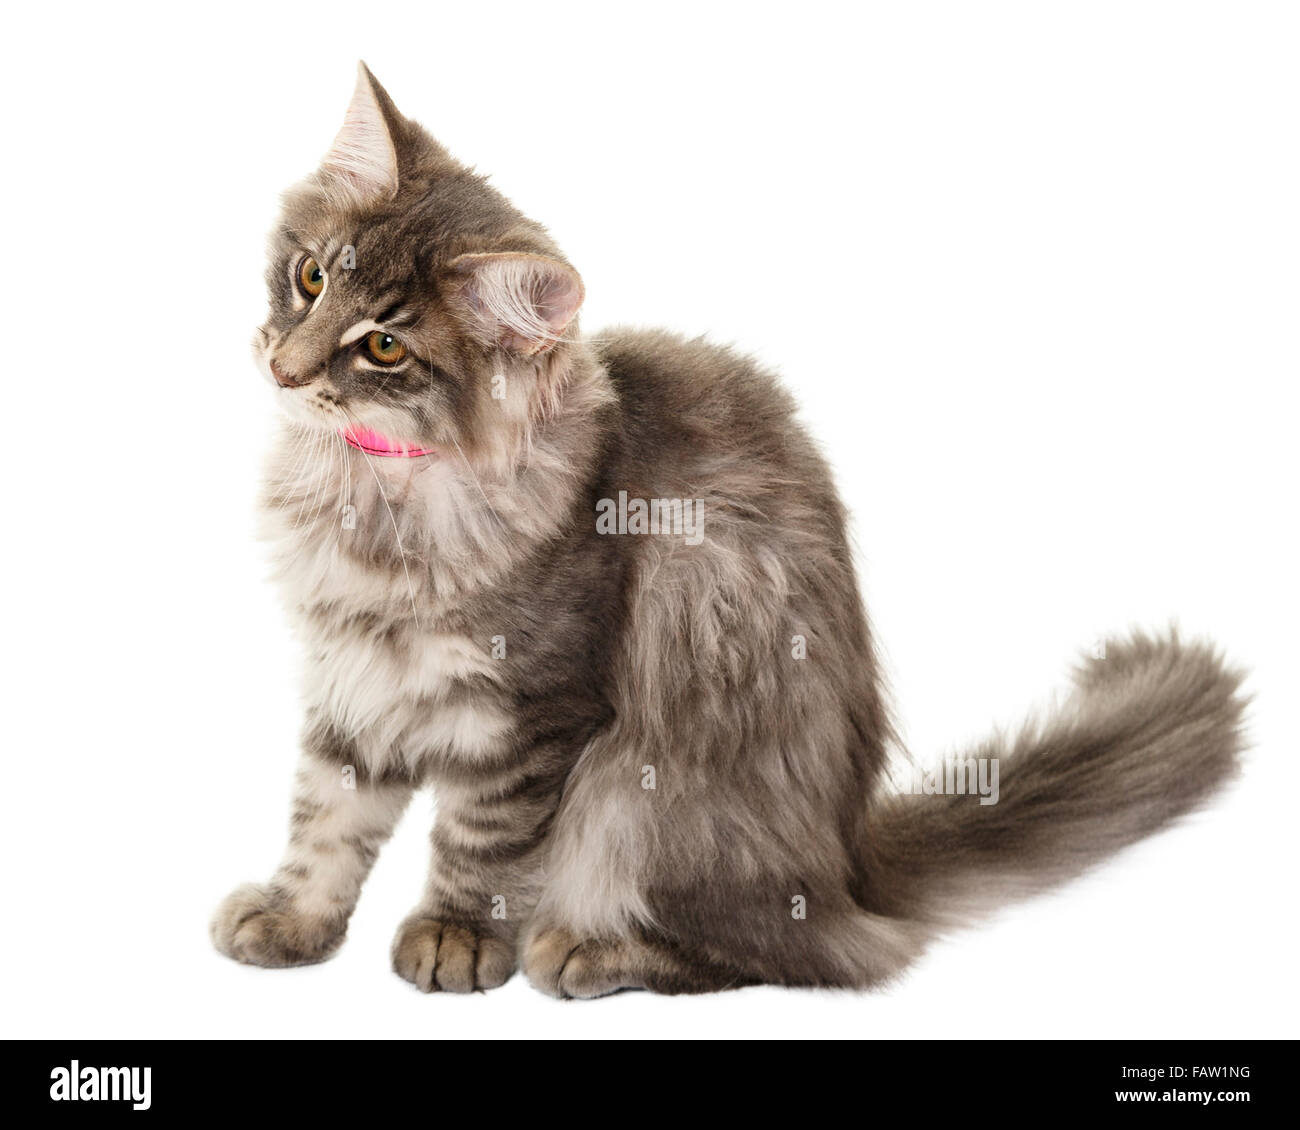 Norwegain Waldkatze kitten Portrait auf weißem Hintergrund isoliert Model Release: Nein Property Release: Nein. Stockfoto